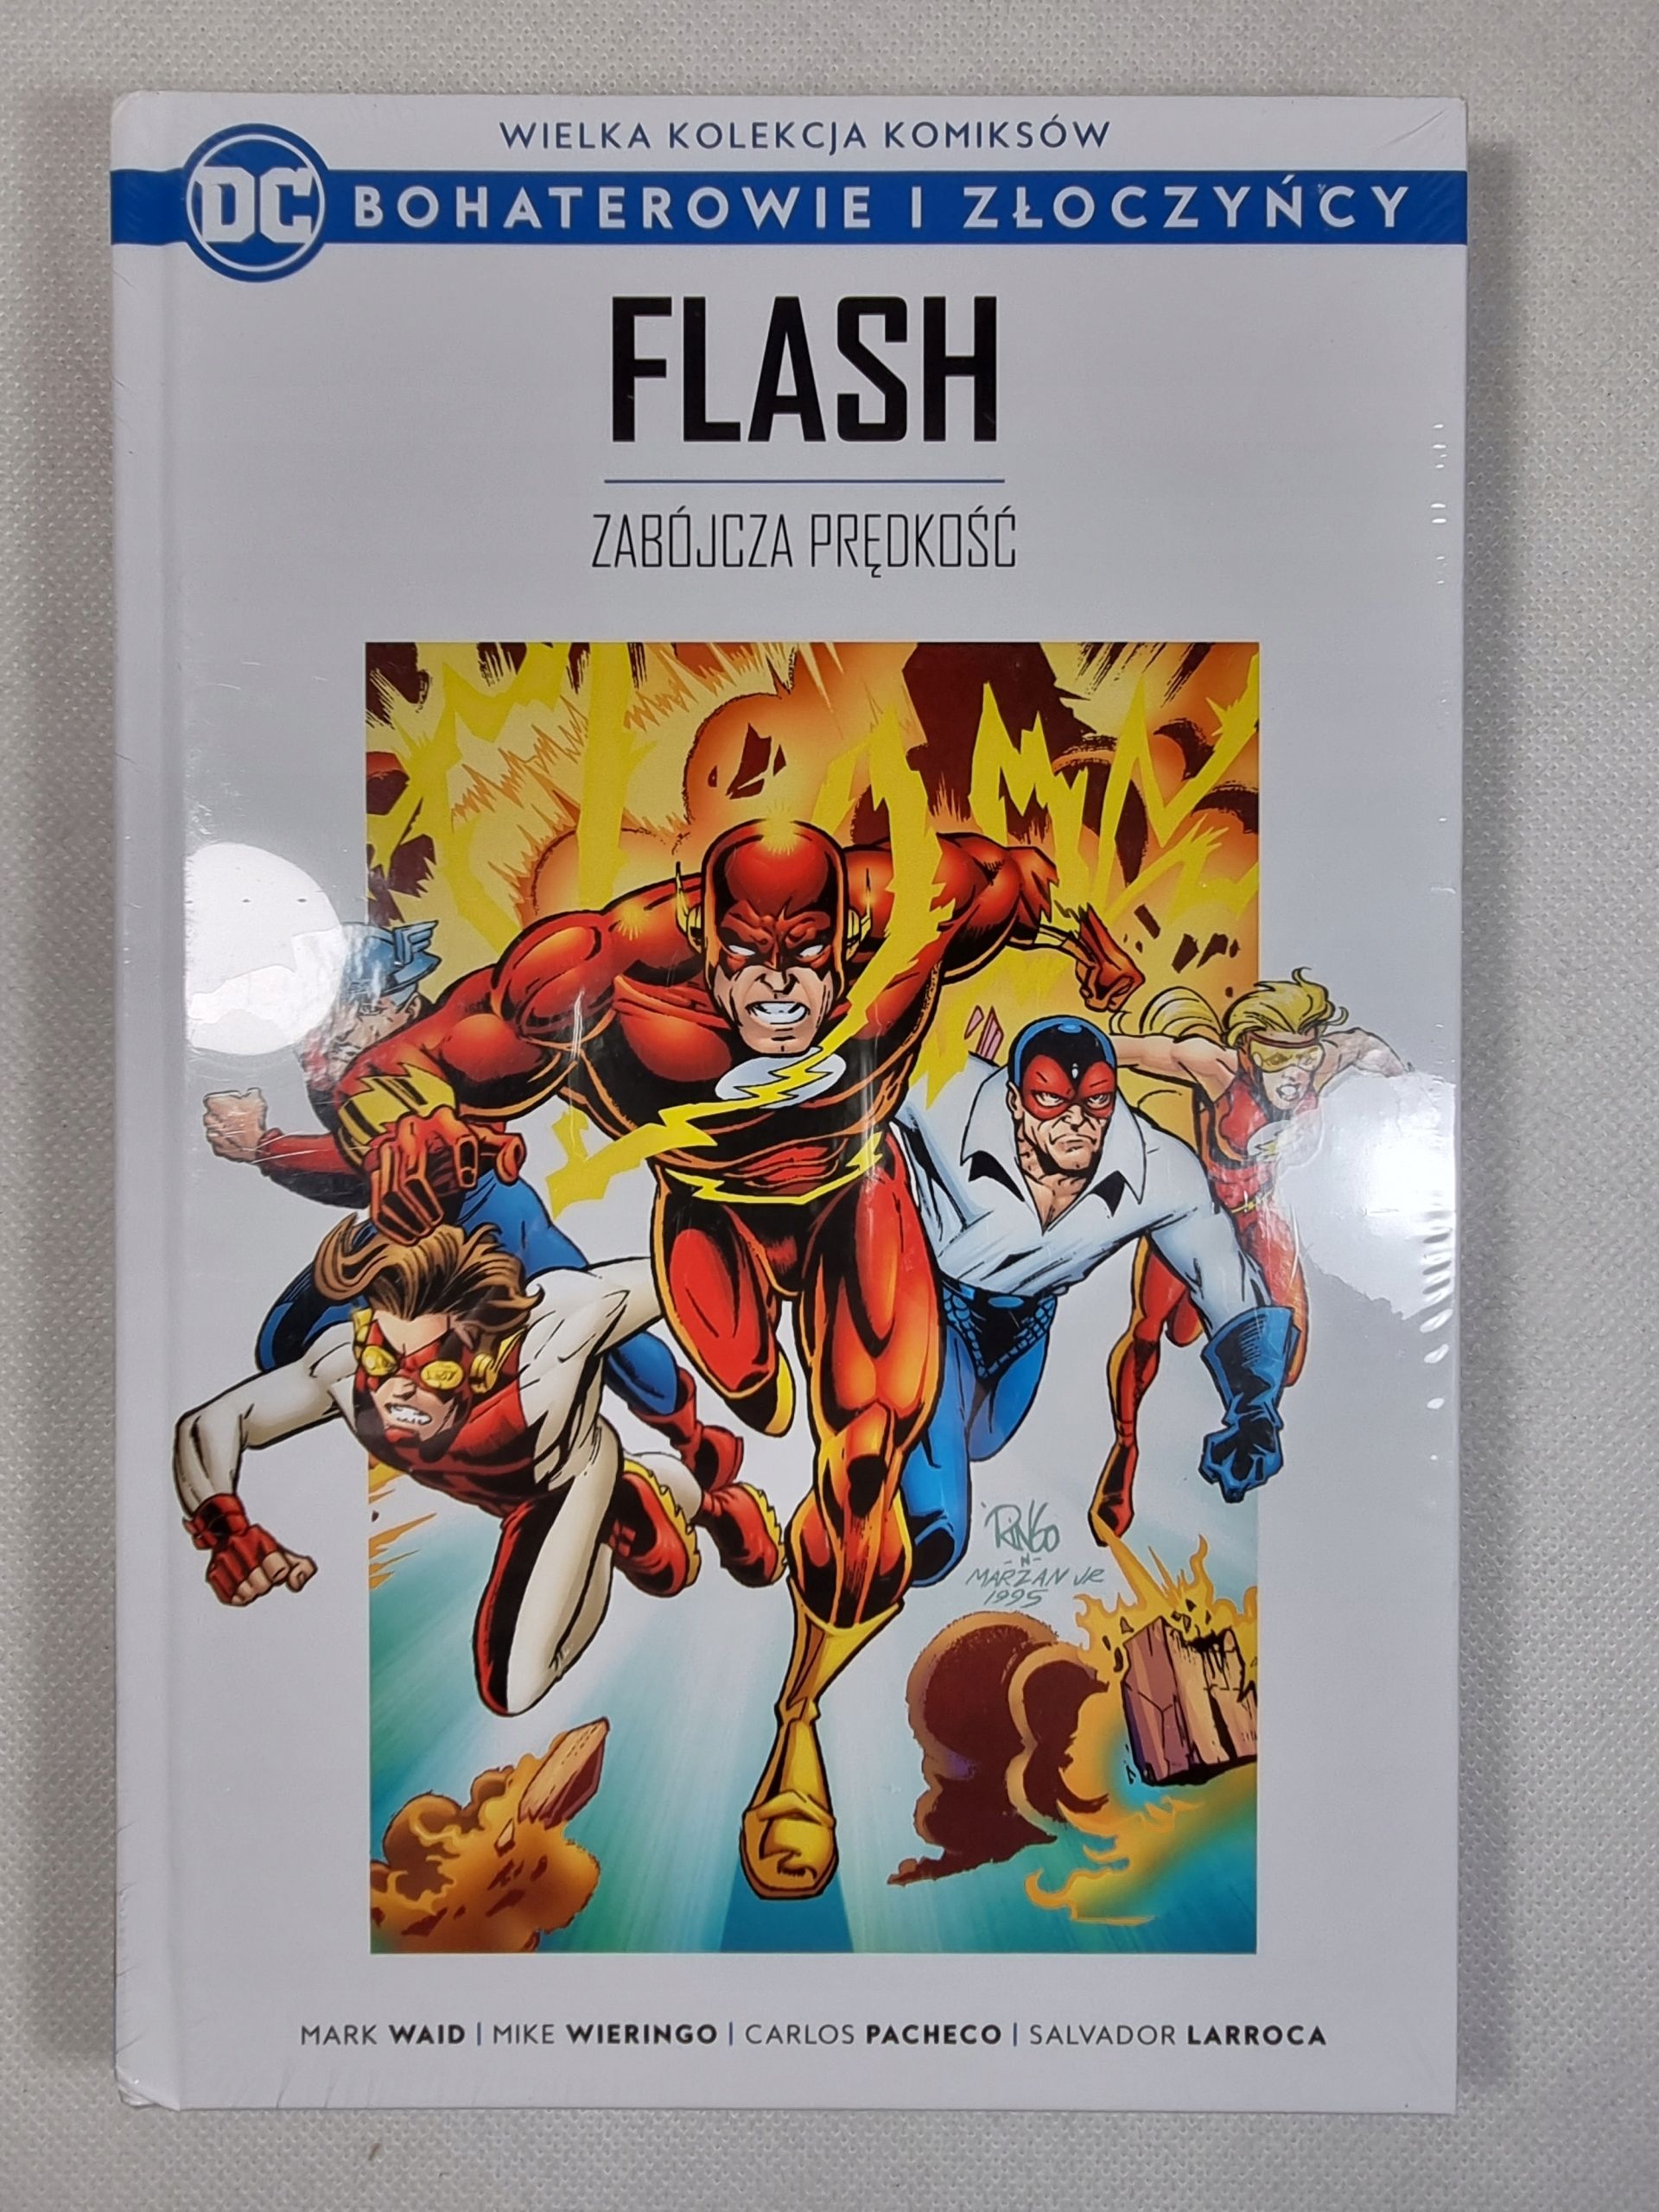 Flash - Zabójcza Prędkość / DC Bohaterowie i Złoczyńcy Tom 40